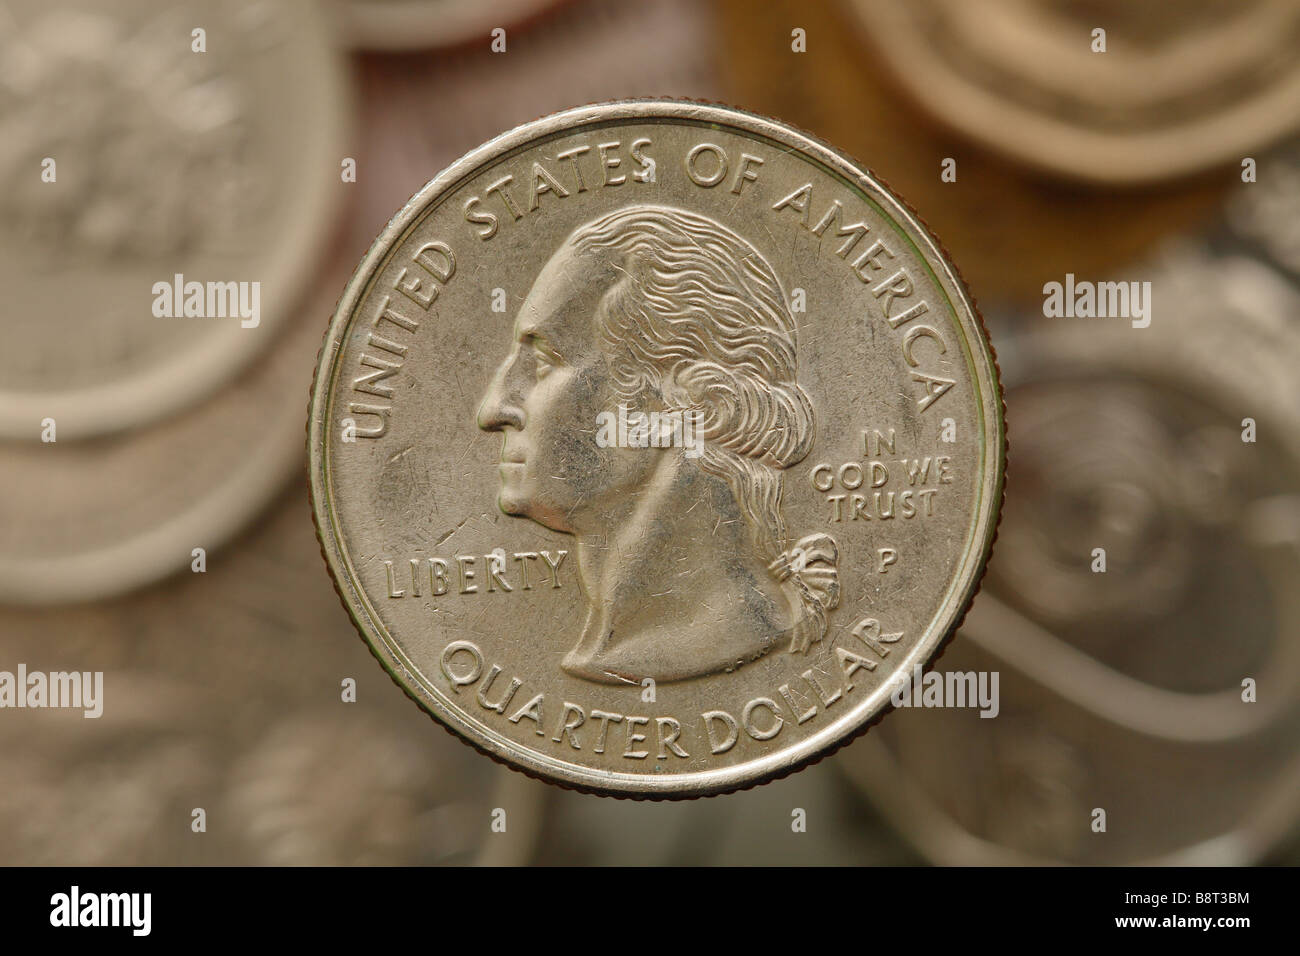 US amerikanische 25 Cent Viertel-Dollar-Münze zeigt das Wort Freiheit und In God We Trust Stockfoto